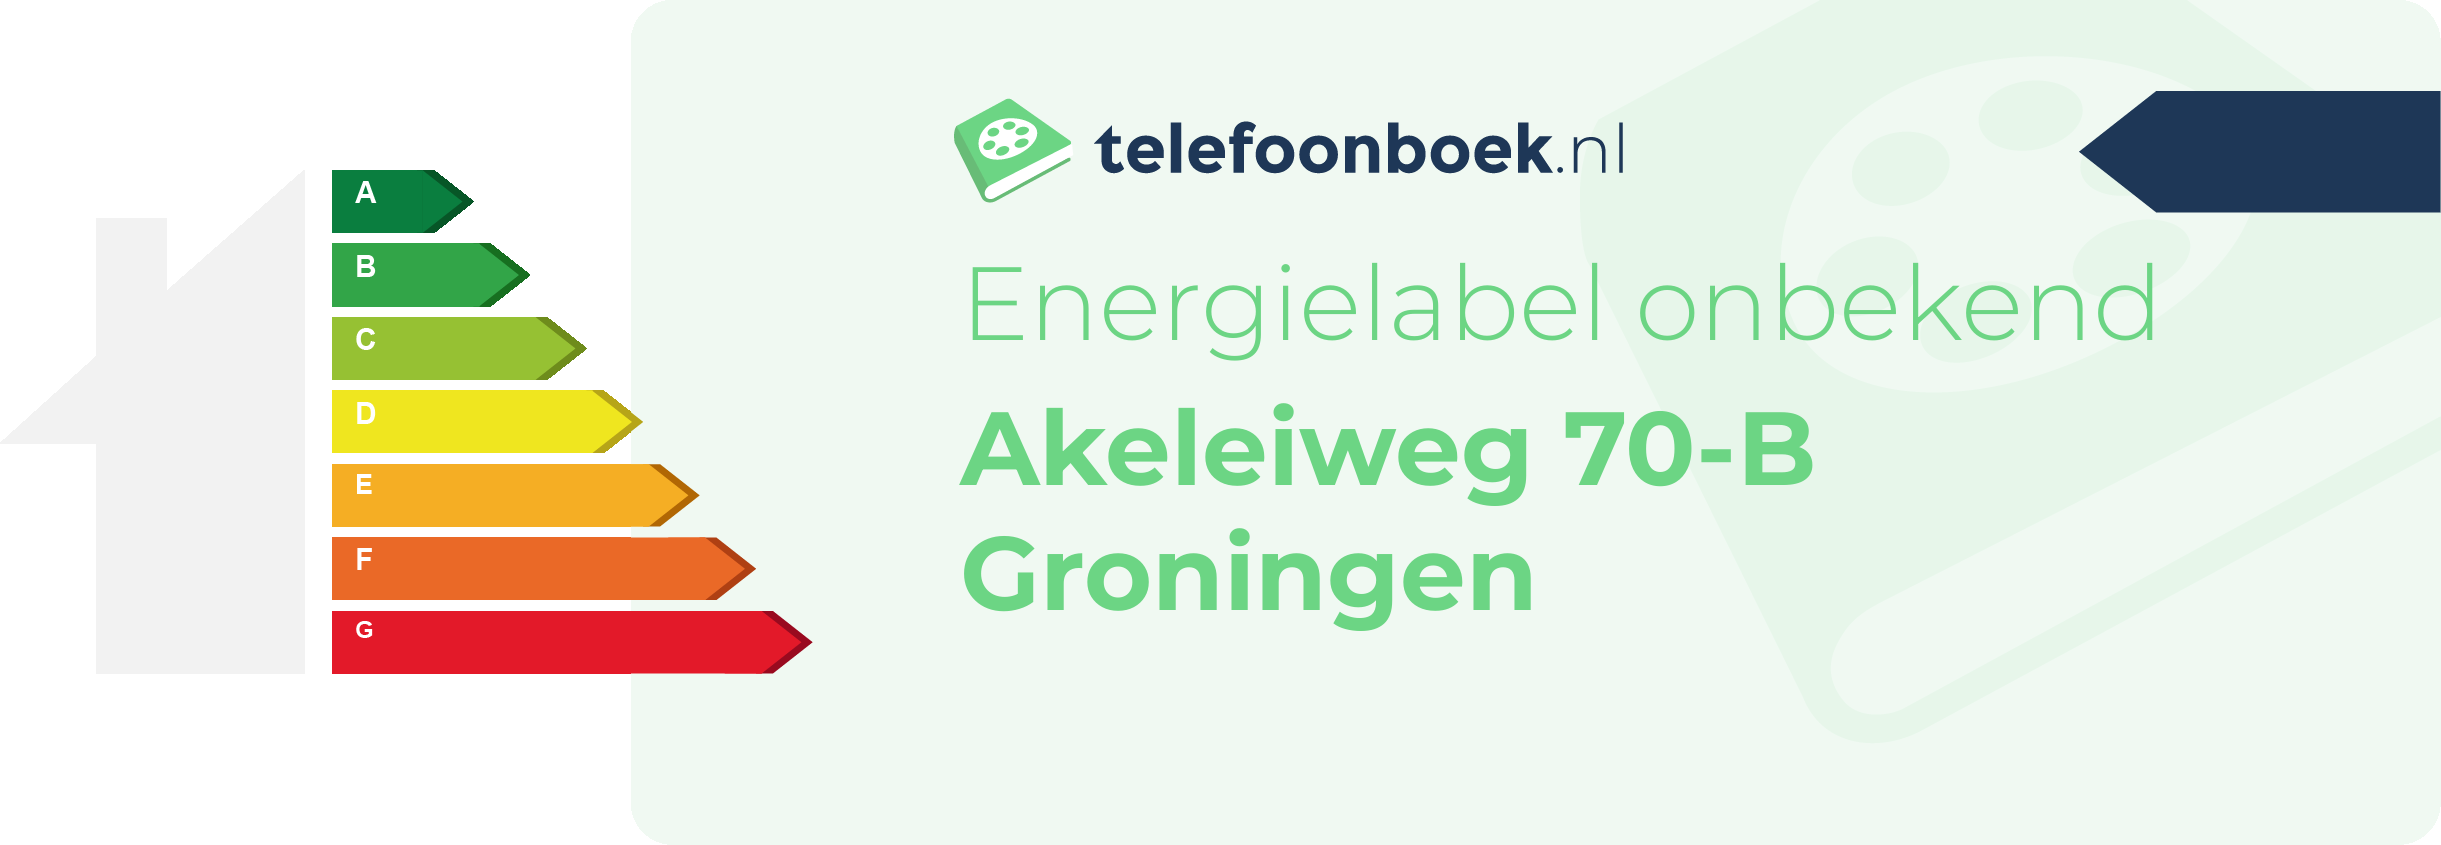 Energielabel Akeleiweg 70-B Groningen